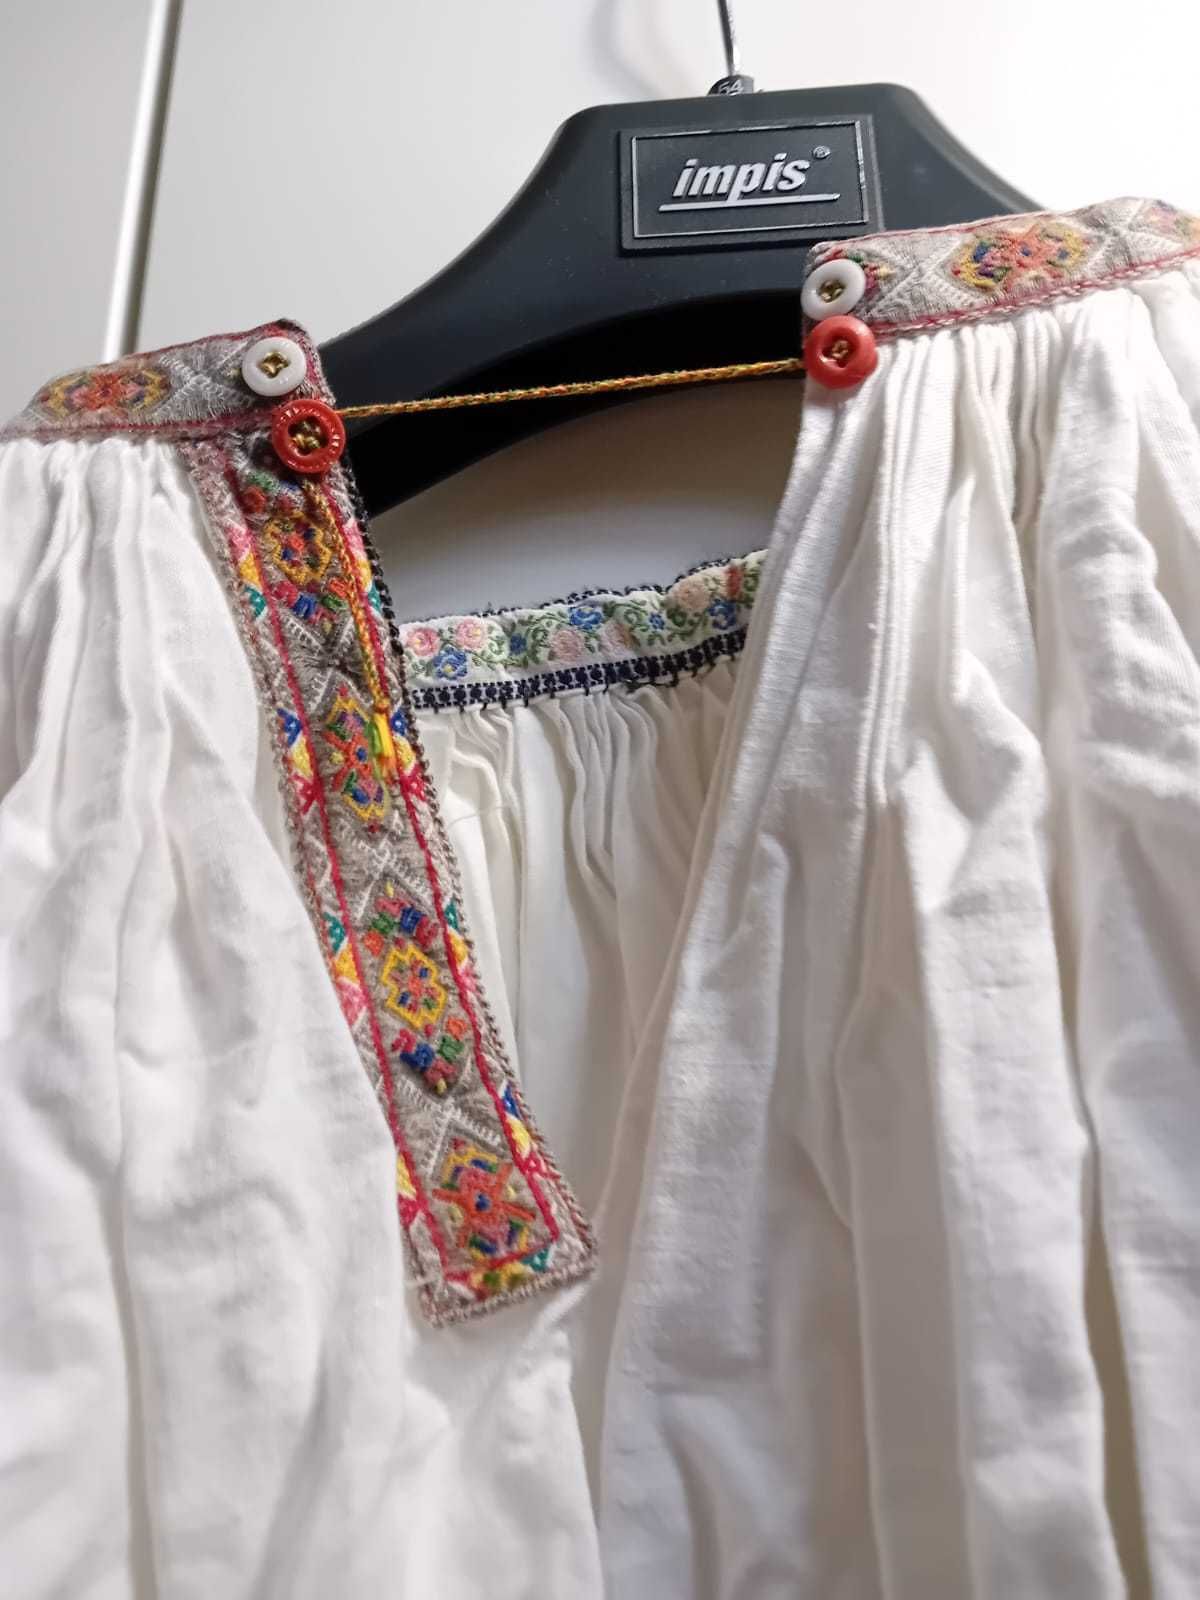 De vanzare camasi populare autentice (aprox 100 de ani)din Ardeal